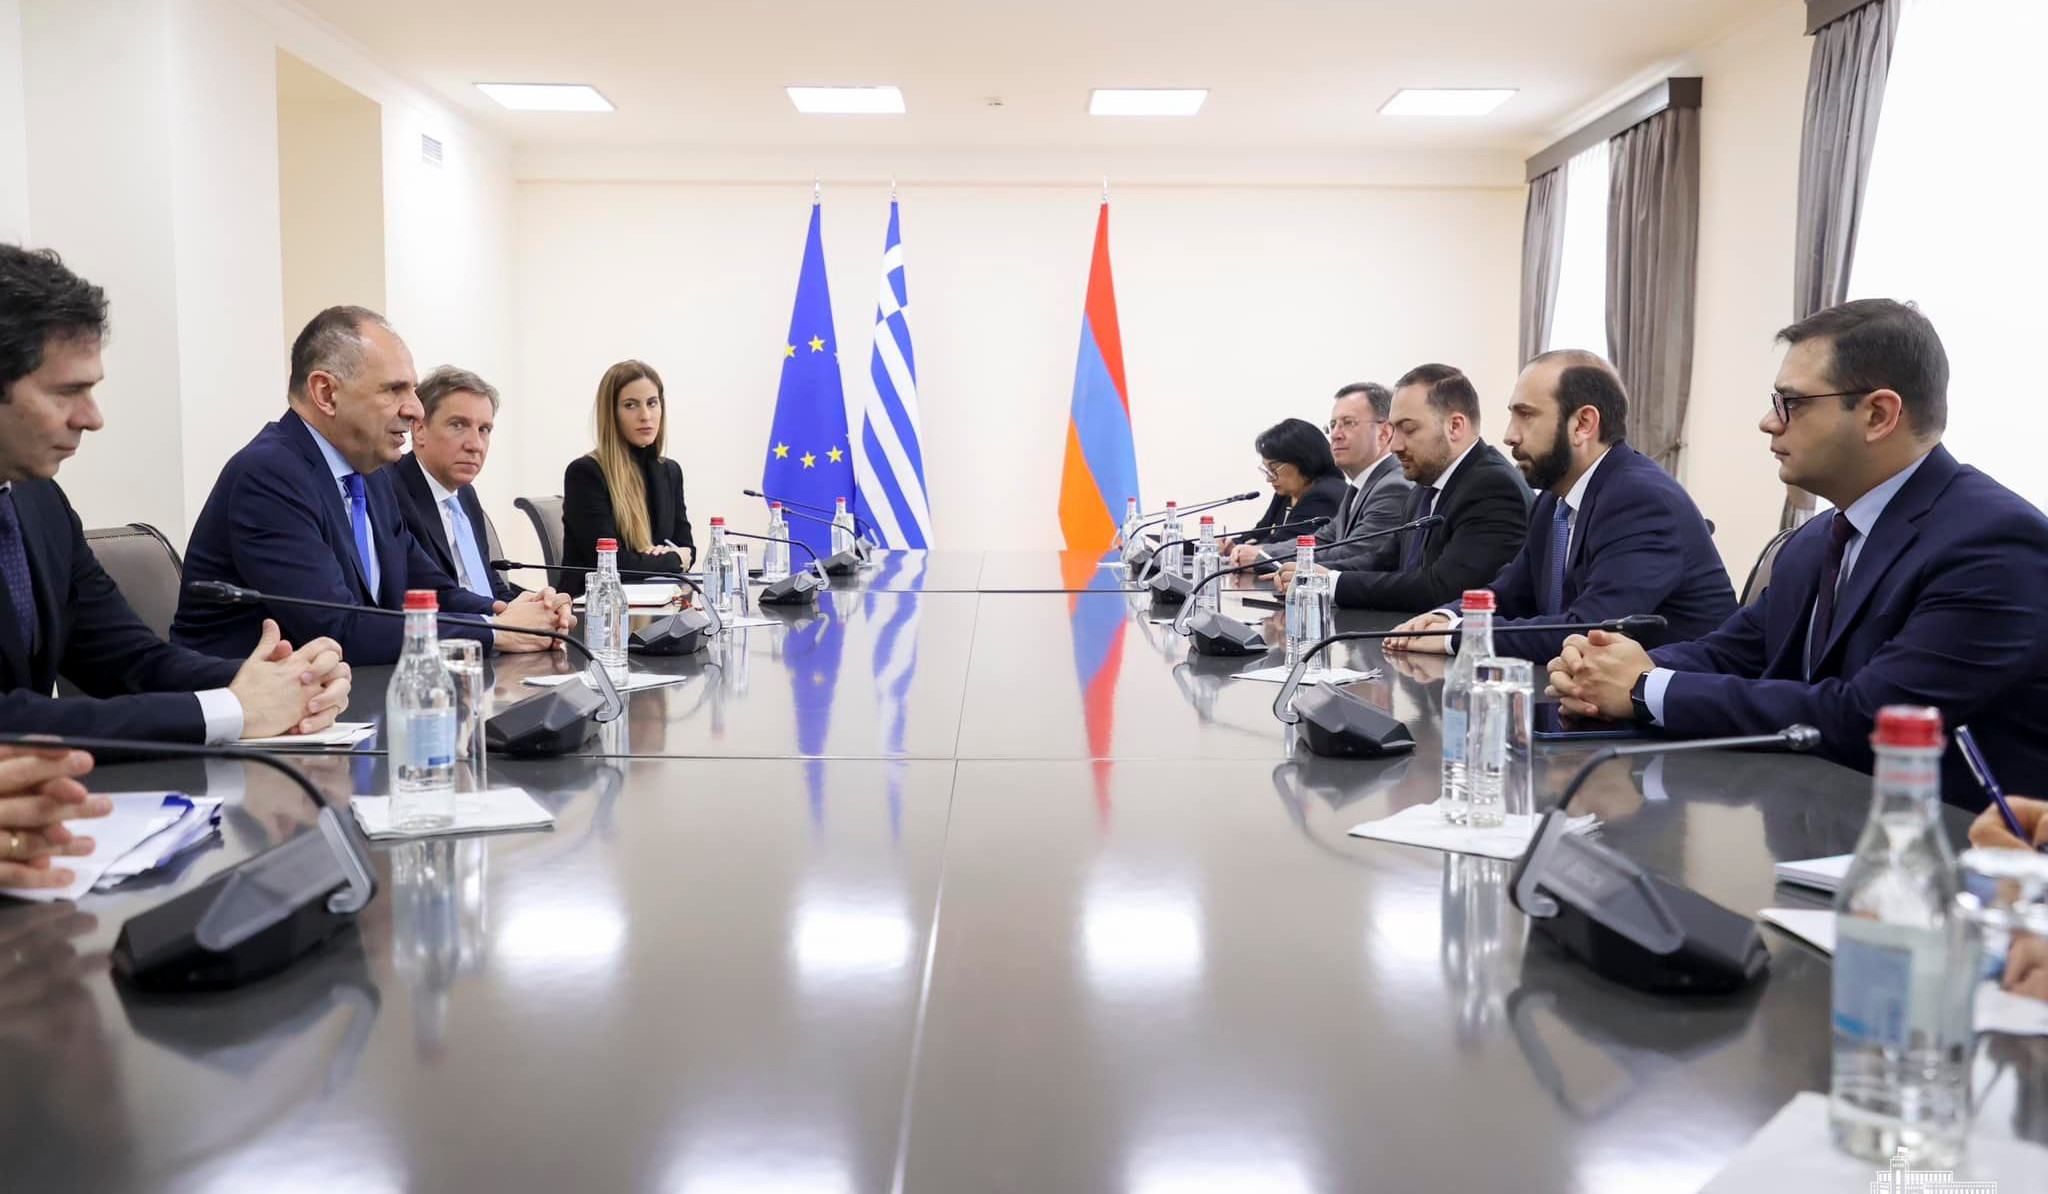 Проходит встреча министров иностранных дел Армении и Греции в расширенном формате